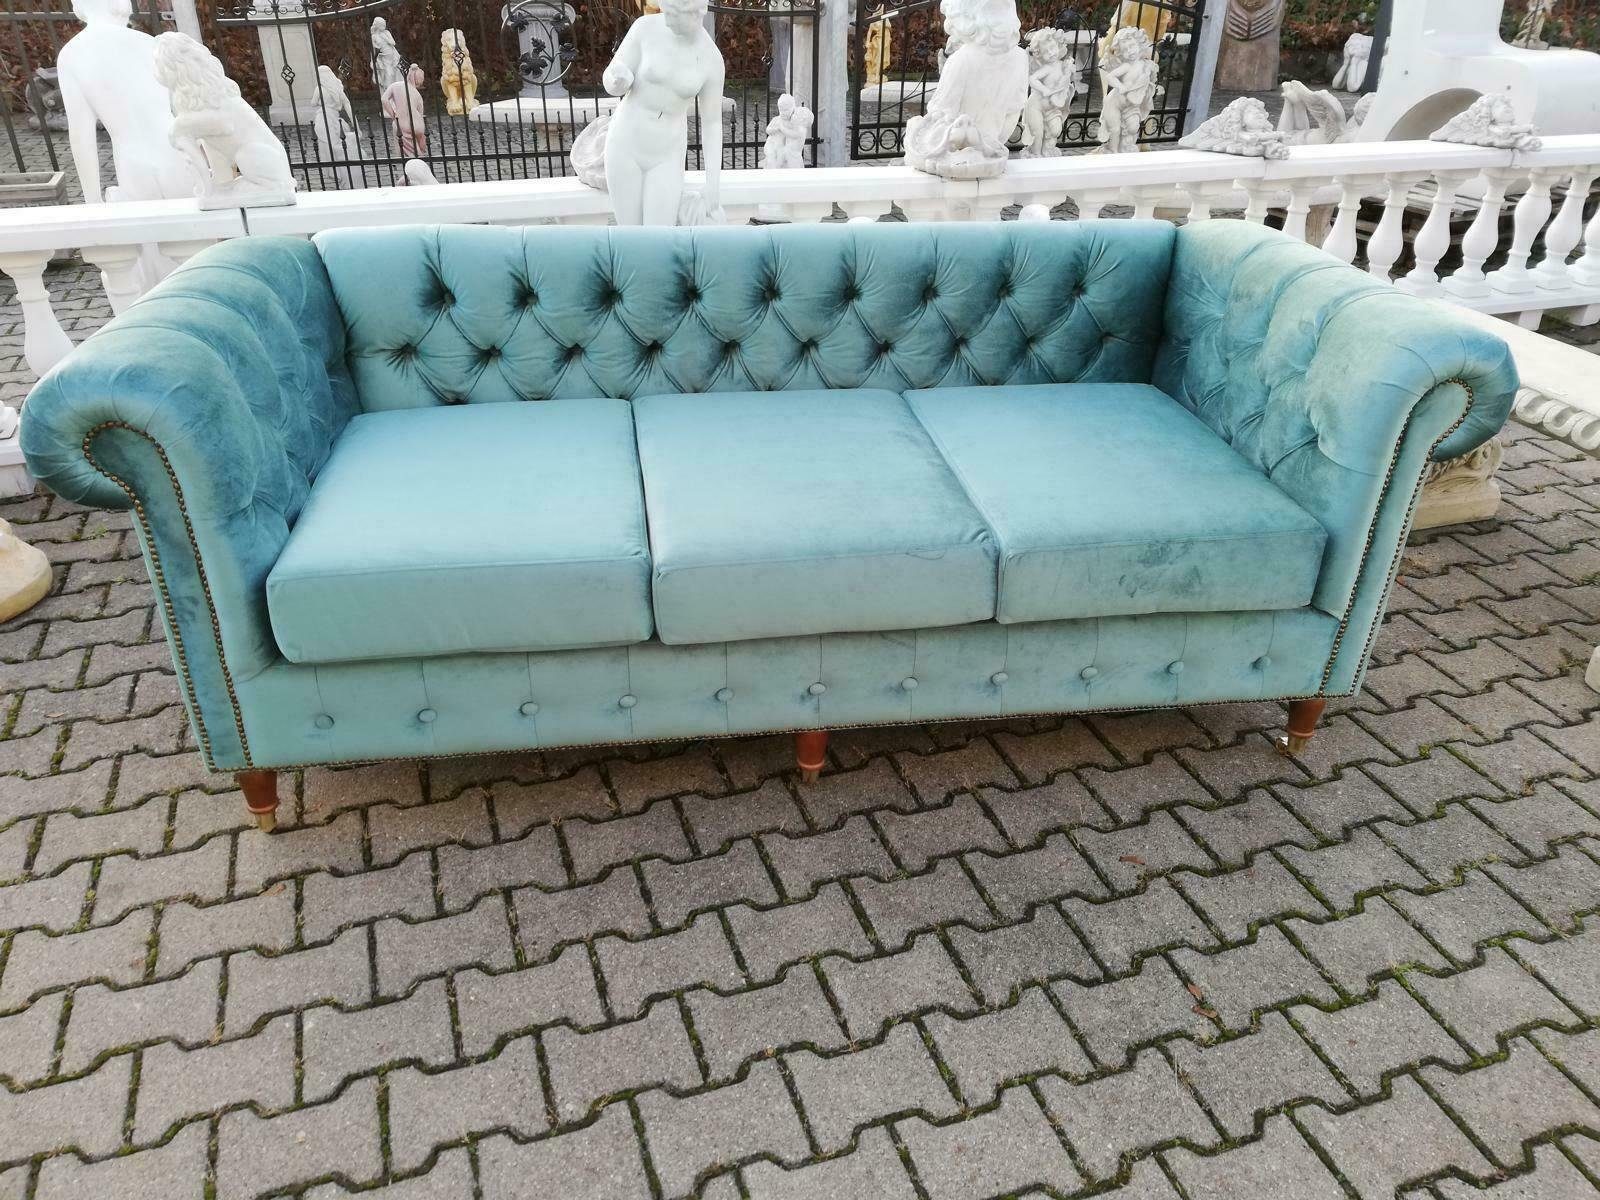 JVmoebel 3-Sitzer Design Chesterfield Sofagarnitur 3-Sitzer Stoff Couch Blau Polster, Made in Europe | Einzelsofas